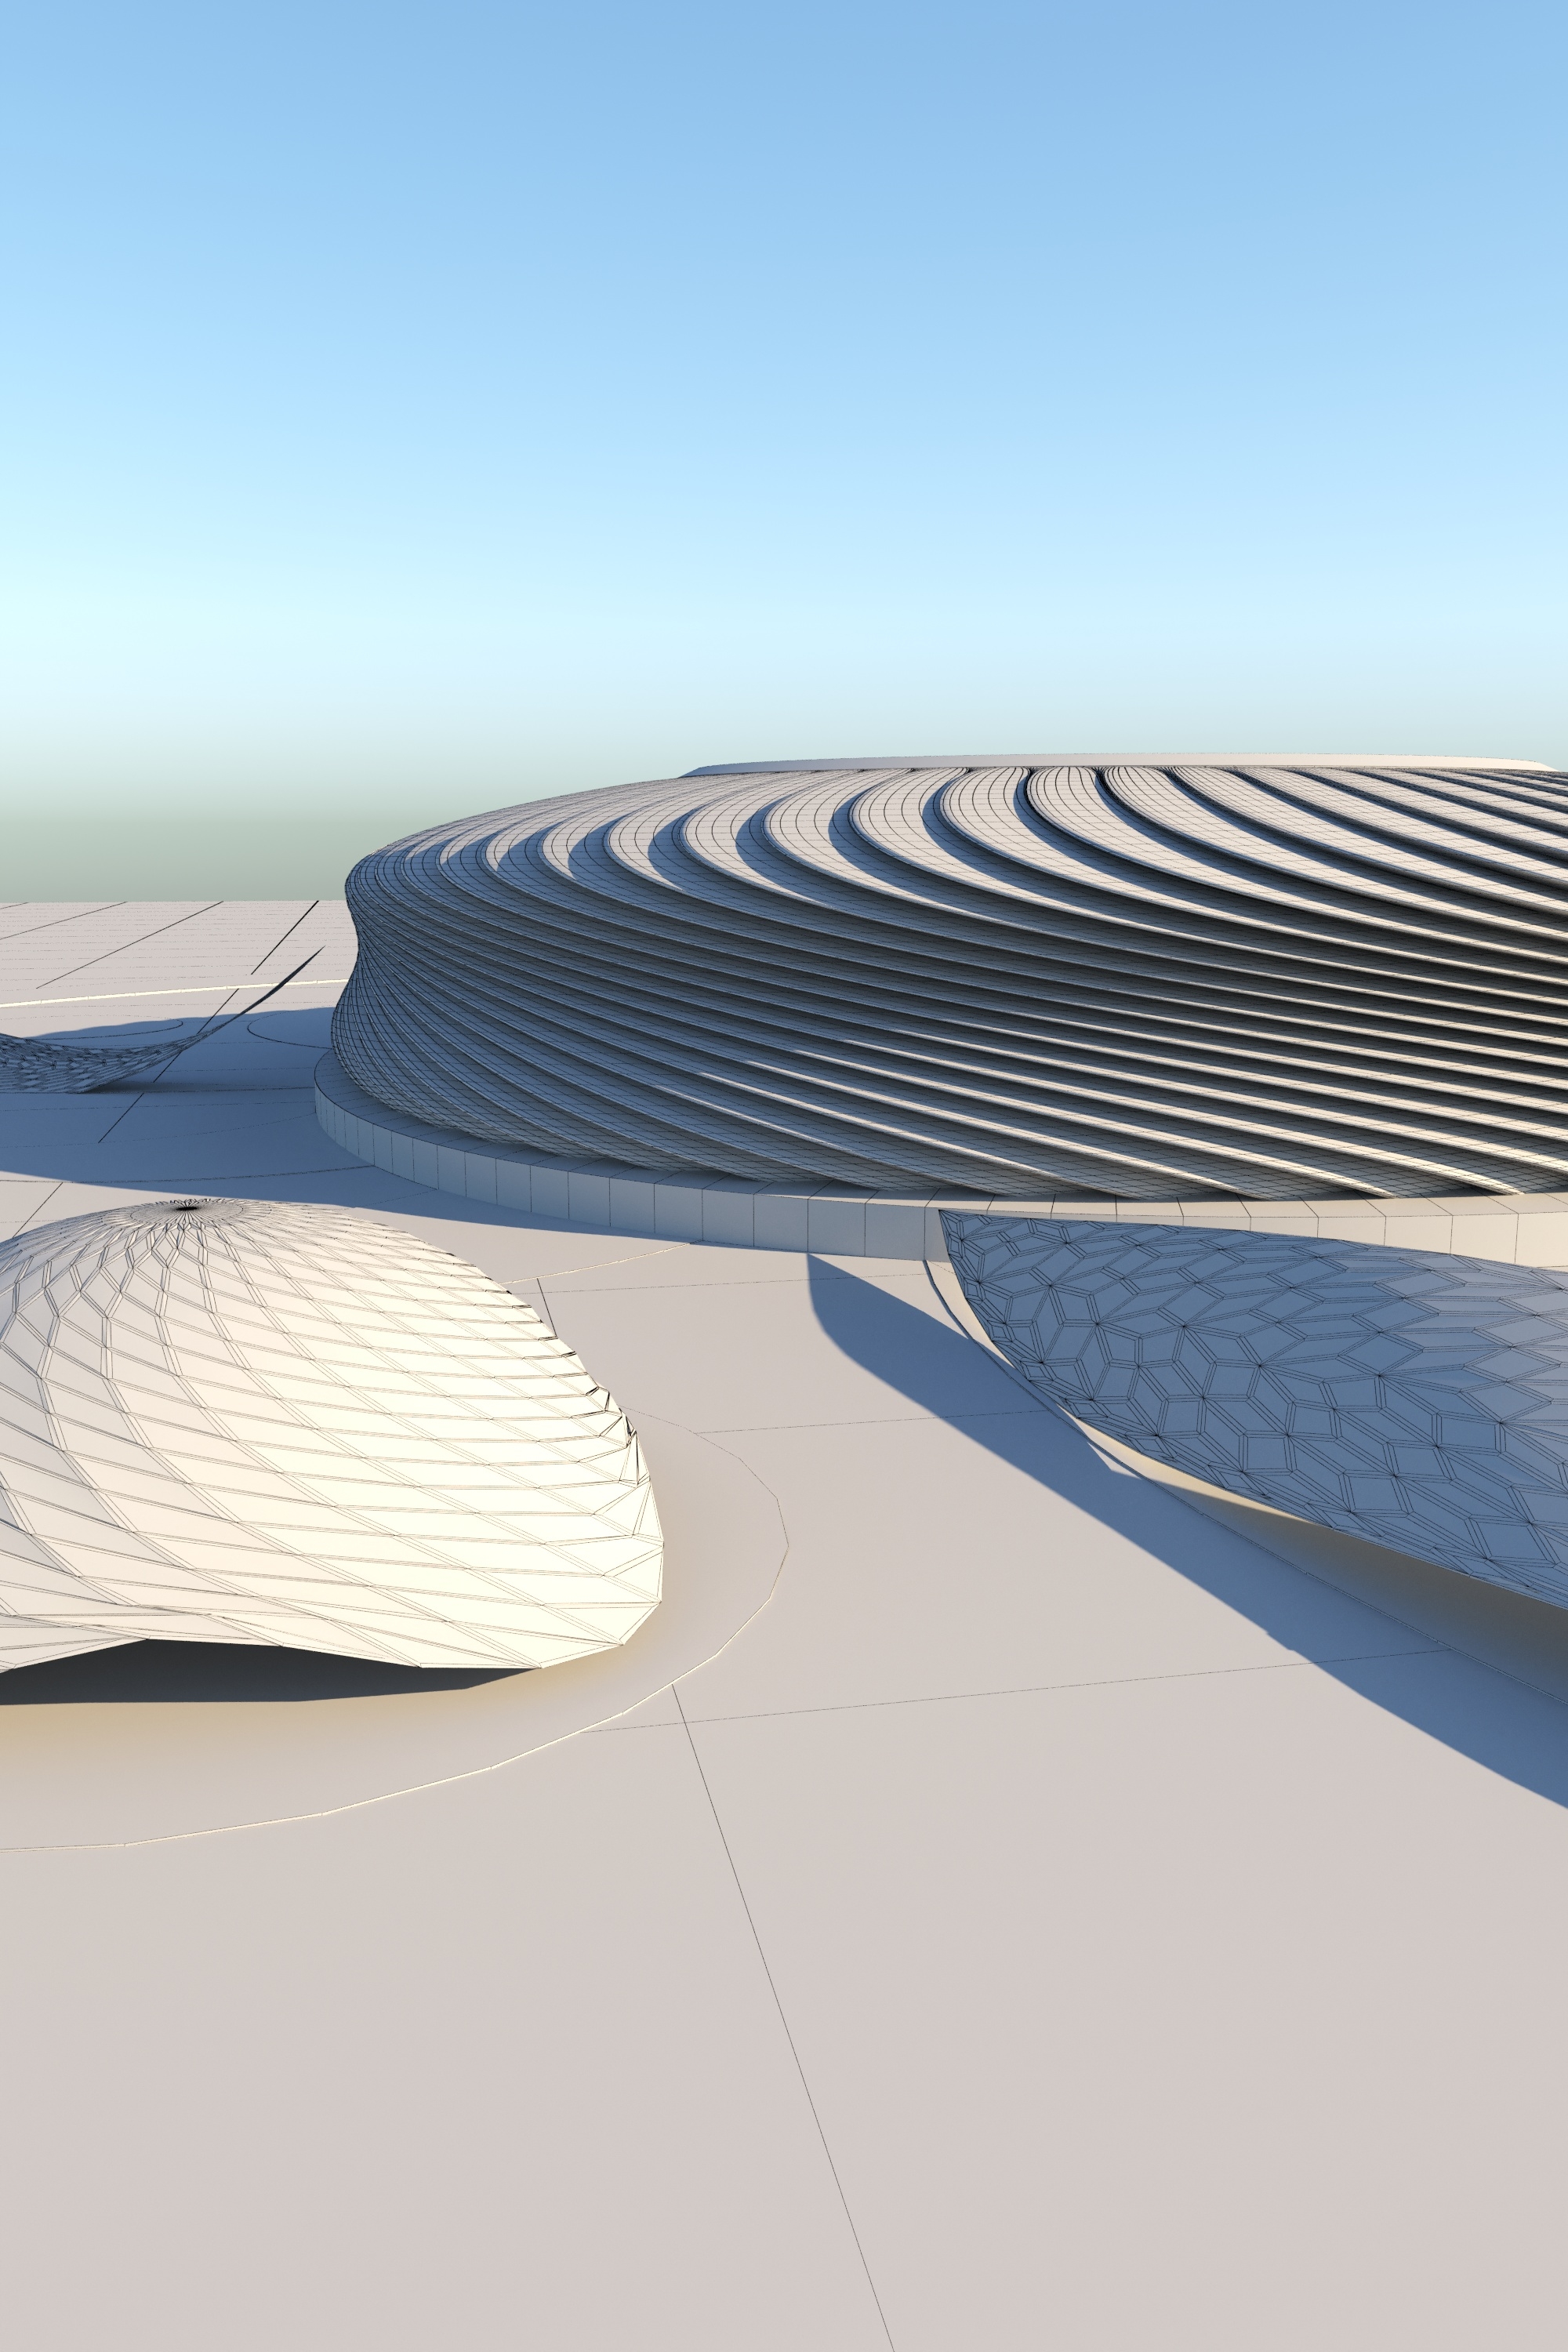 Arena architectural stadium 3D model - TurboSquid 1485967